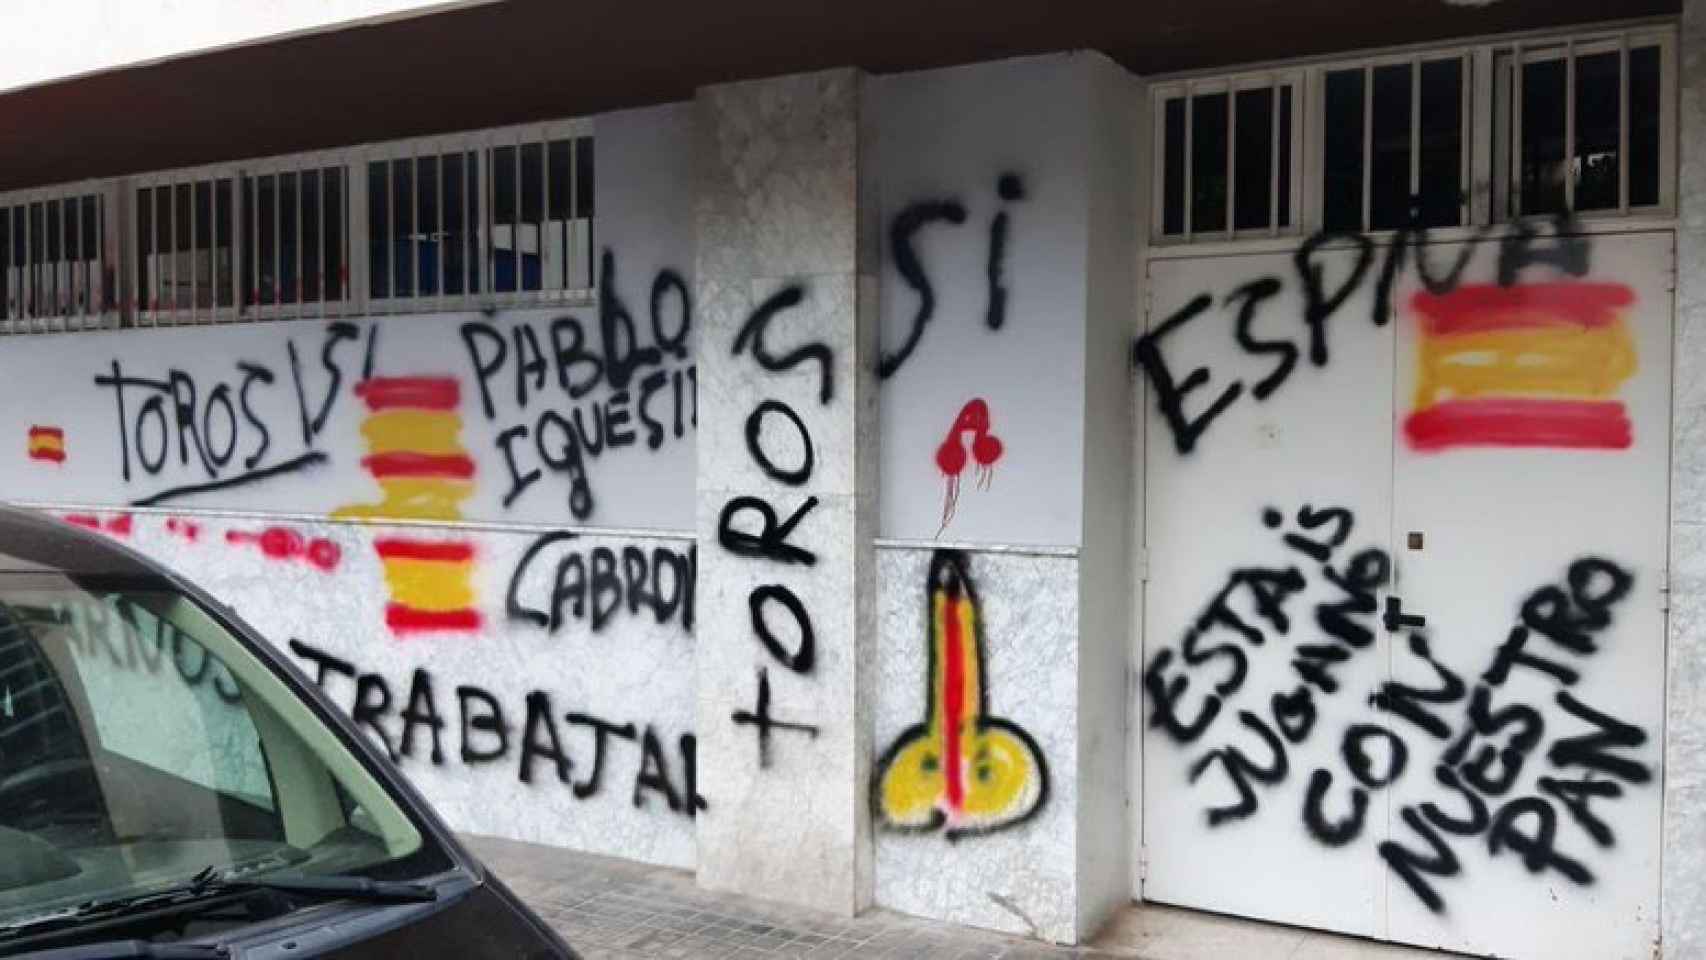 La sede de Podemos de Andalucía en Sevilla con pintadas en su fachada.